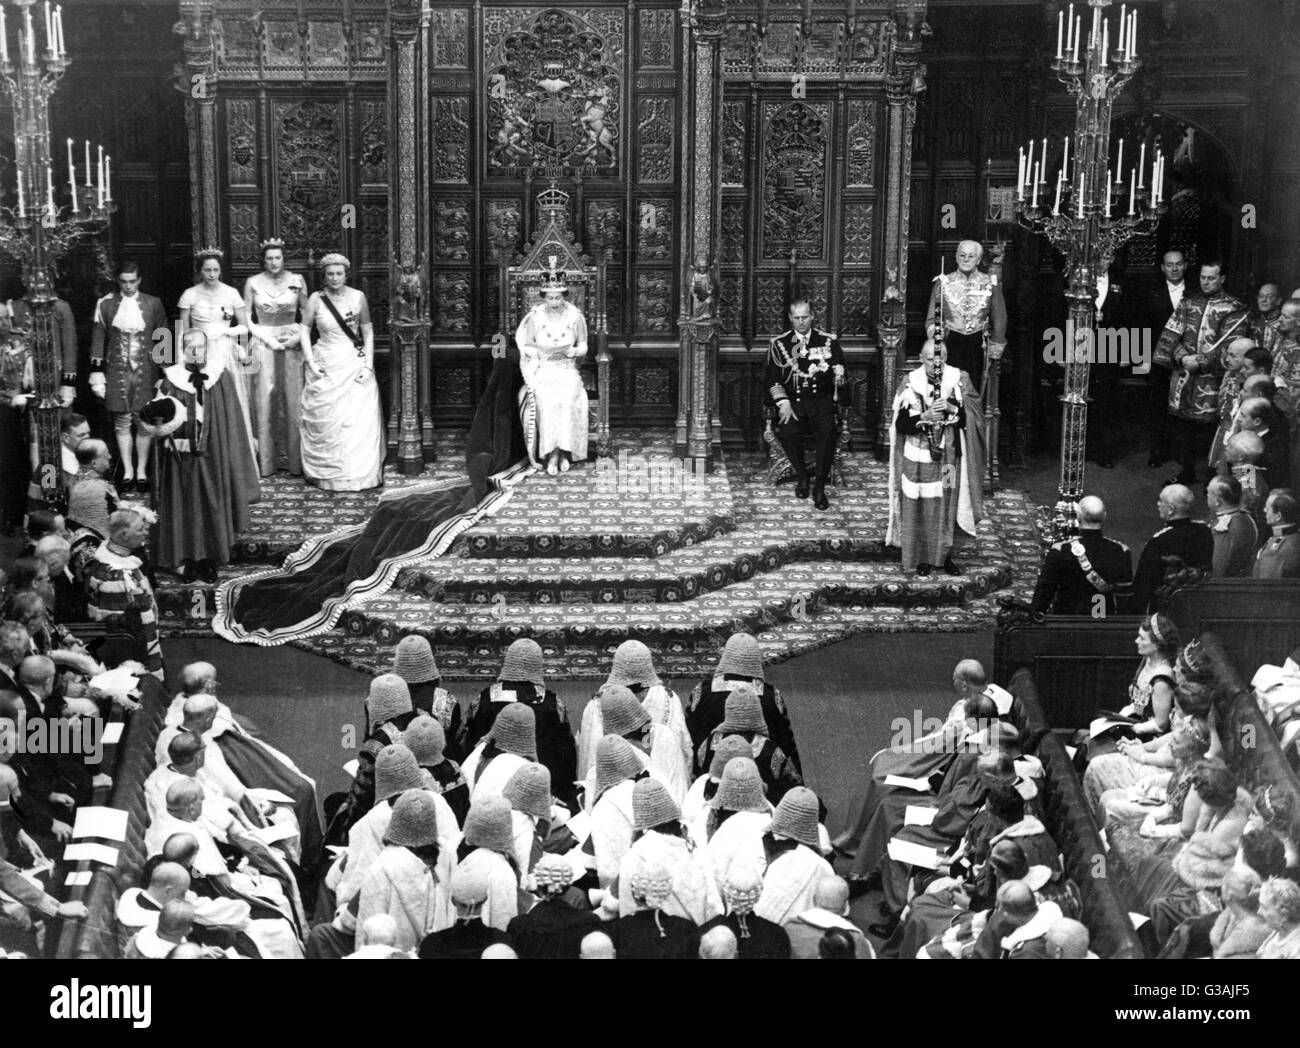 Die staatliche Öffnung von den großen britischen Parlament - Oberhaus, Houses of Parliament, London, England-Datum: ca. 1959 Stockfoto